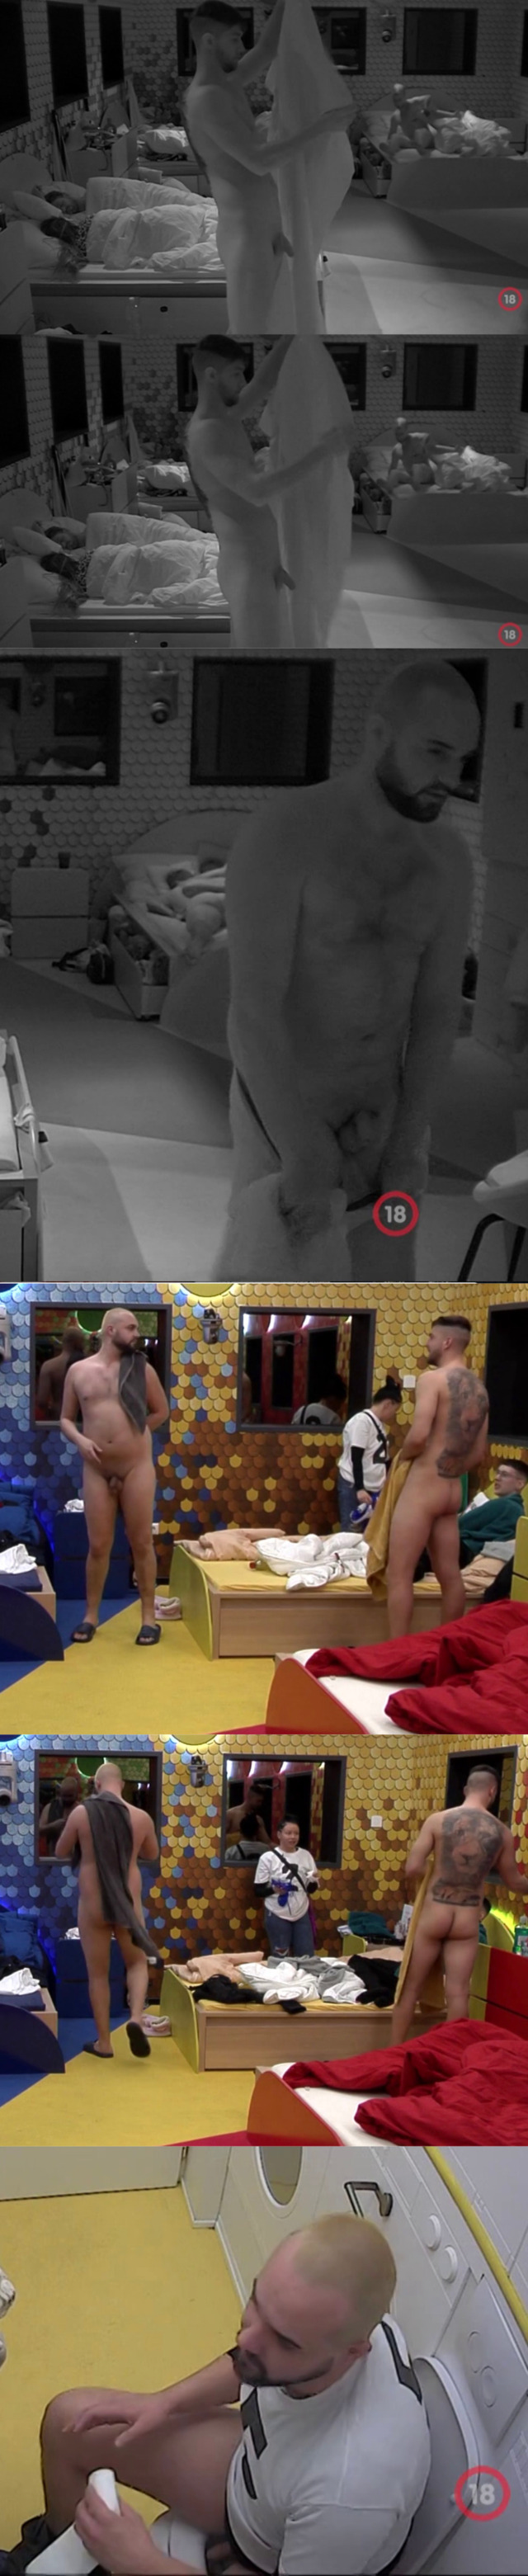 Rico and Barna exposed at Big Brother Hungary